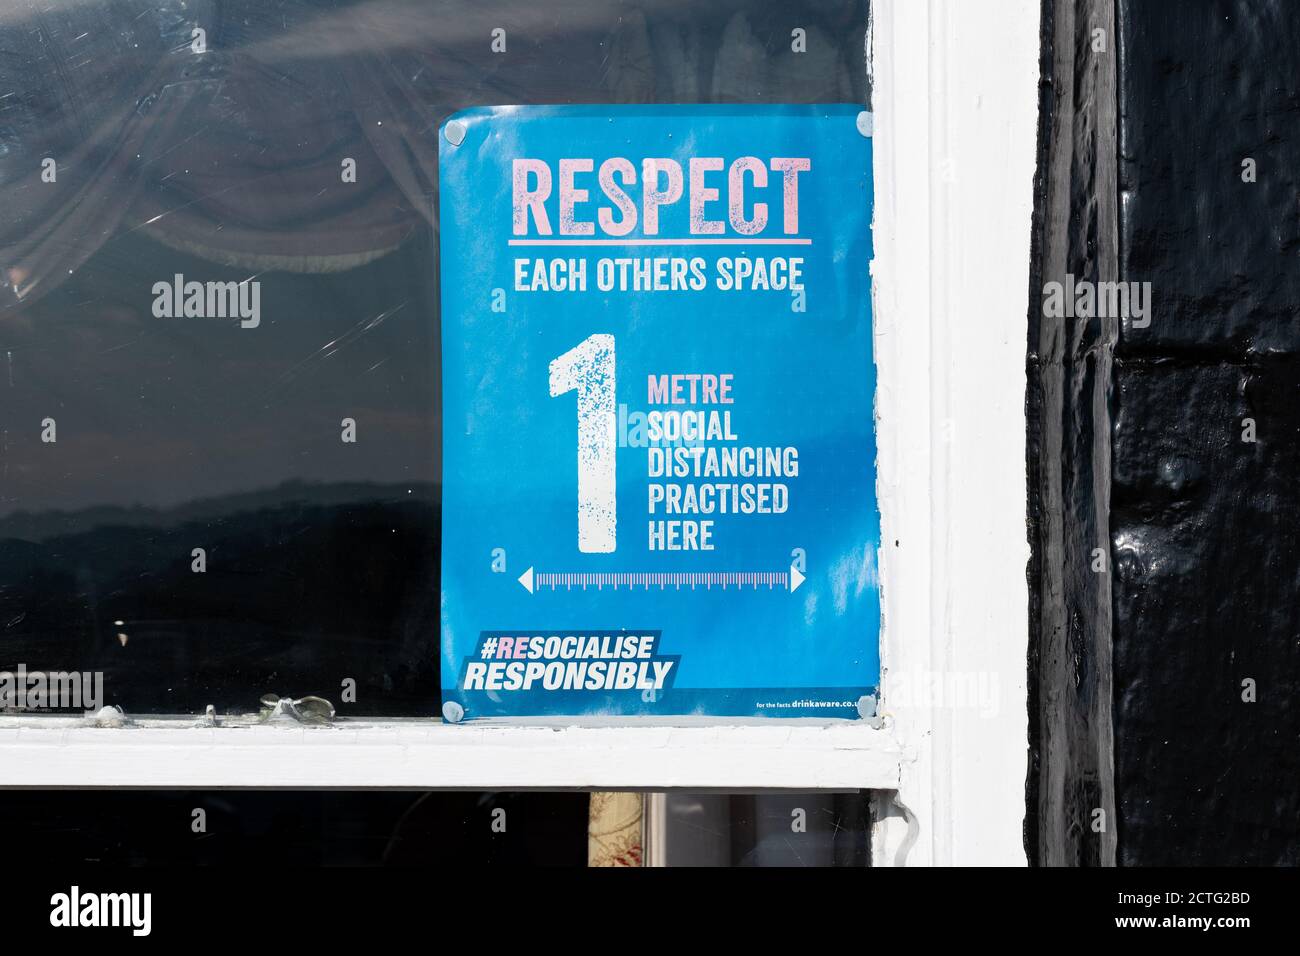 Signe de règle de distance sociale de 1 mètre dans la fenêtre du pub pendant la pandémie du coronavirus - Angleterre, Royaume-Uni Banque D'Images